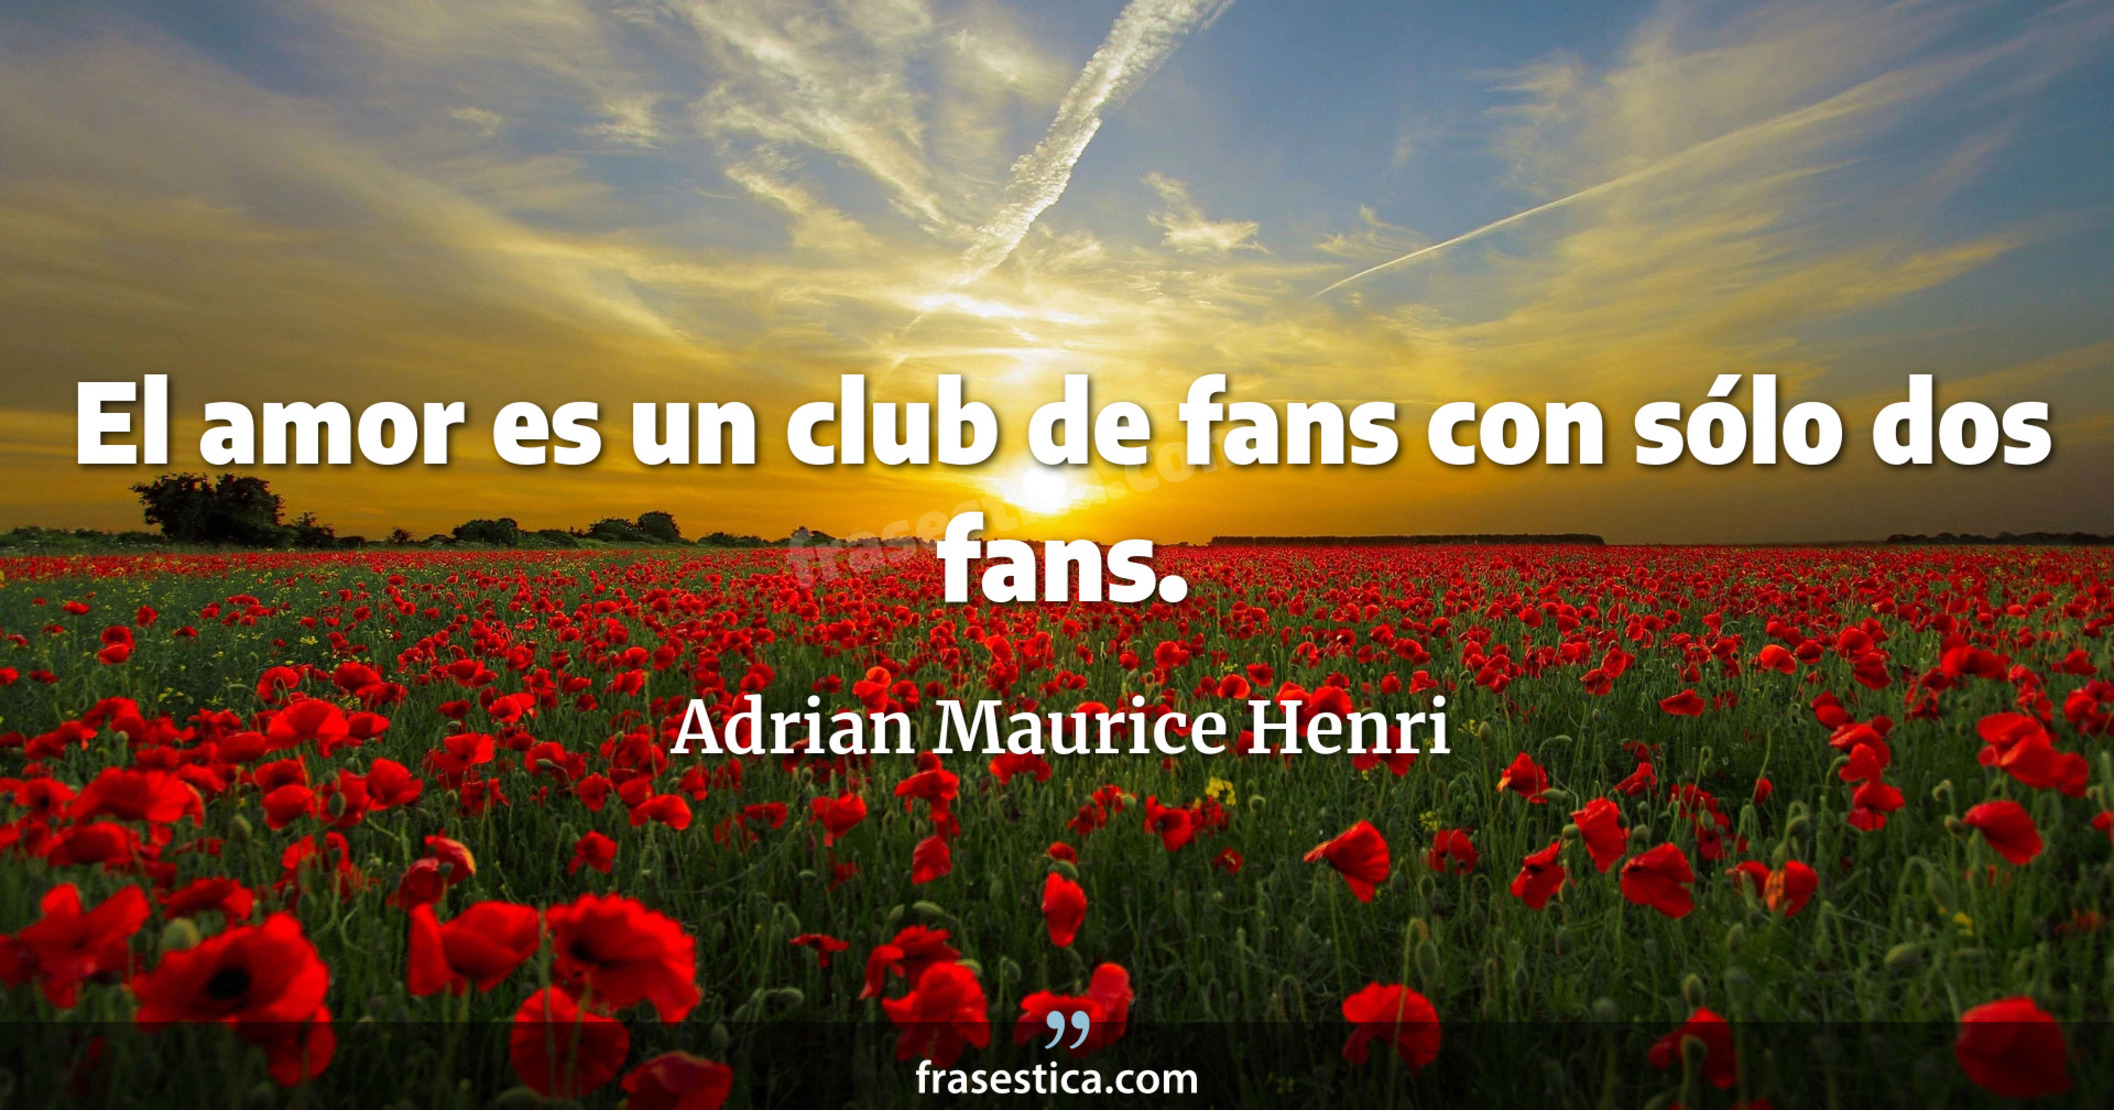 El amor es un club de fans con sólo dos fans. - Adrian Maurice Henri